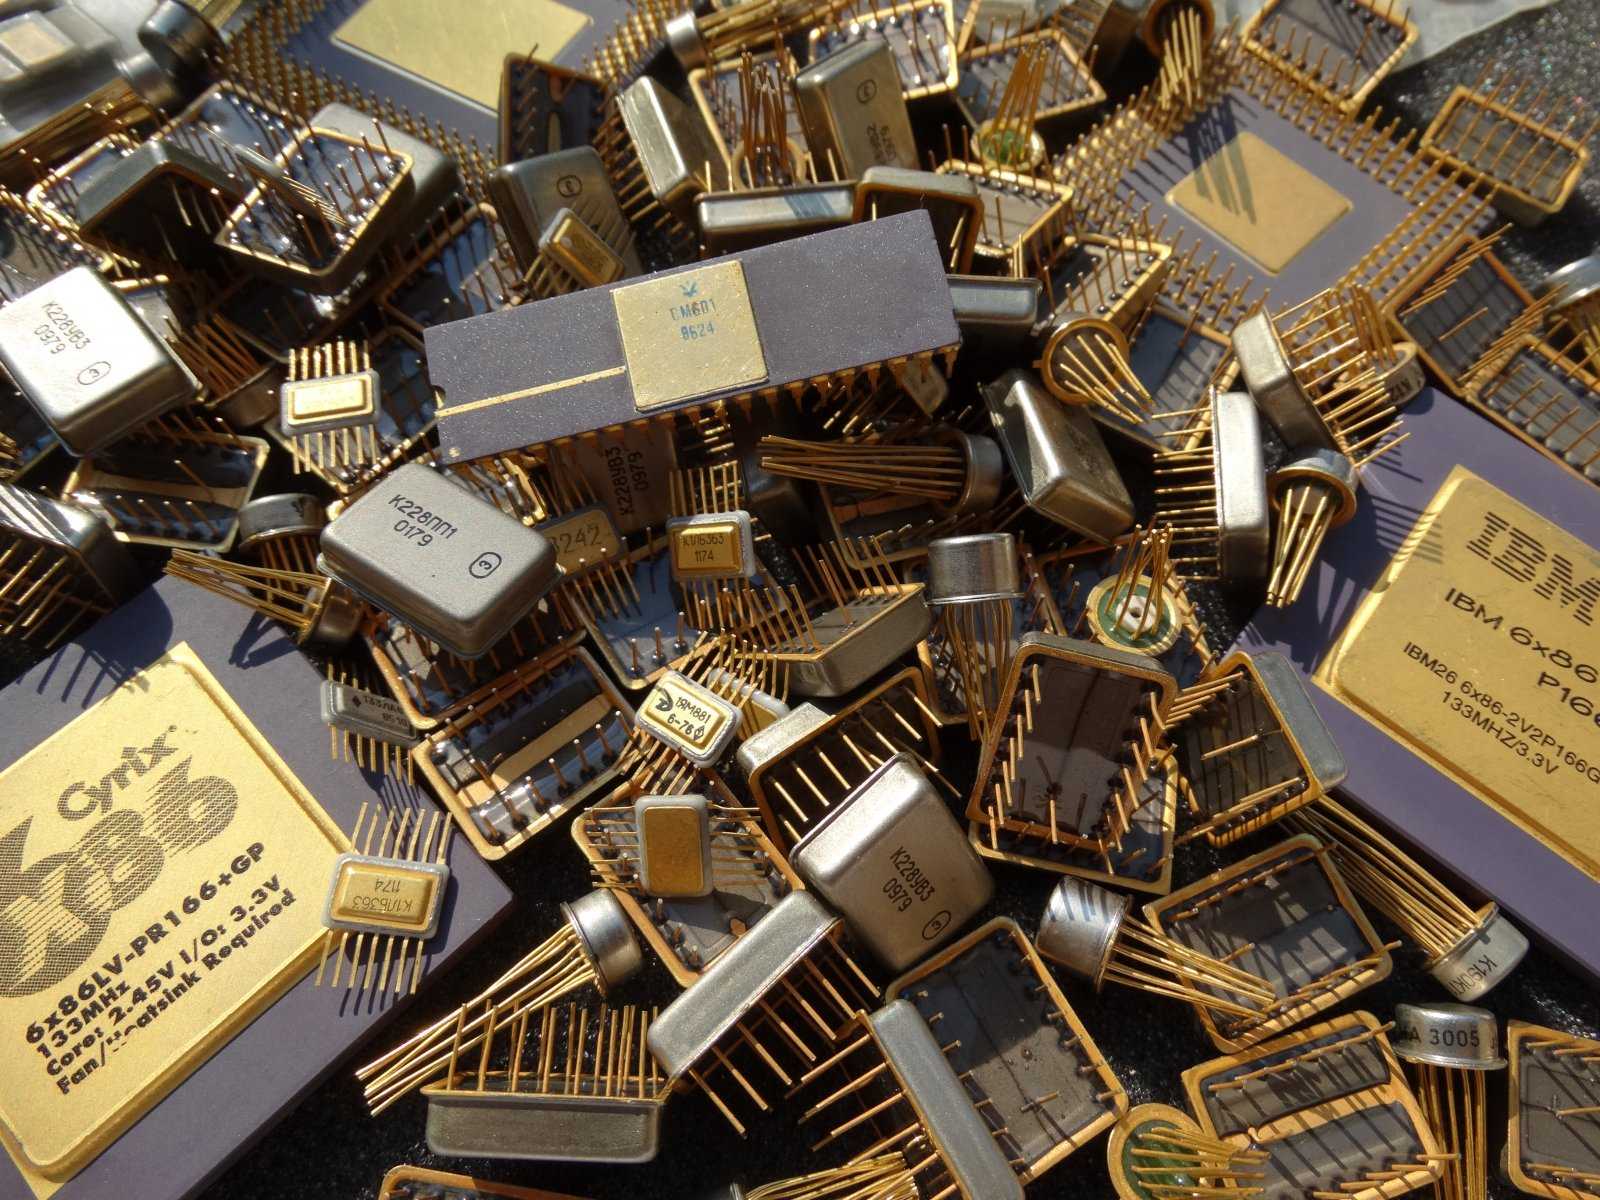 Серенада-306 cтационарная транзисторная радиола содержание драгоценных металлов, серебро, транзисторы, схема, паспорт, инструкция, описание